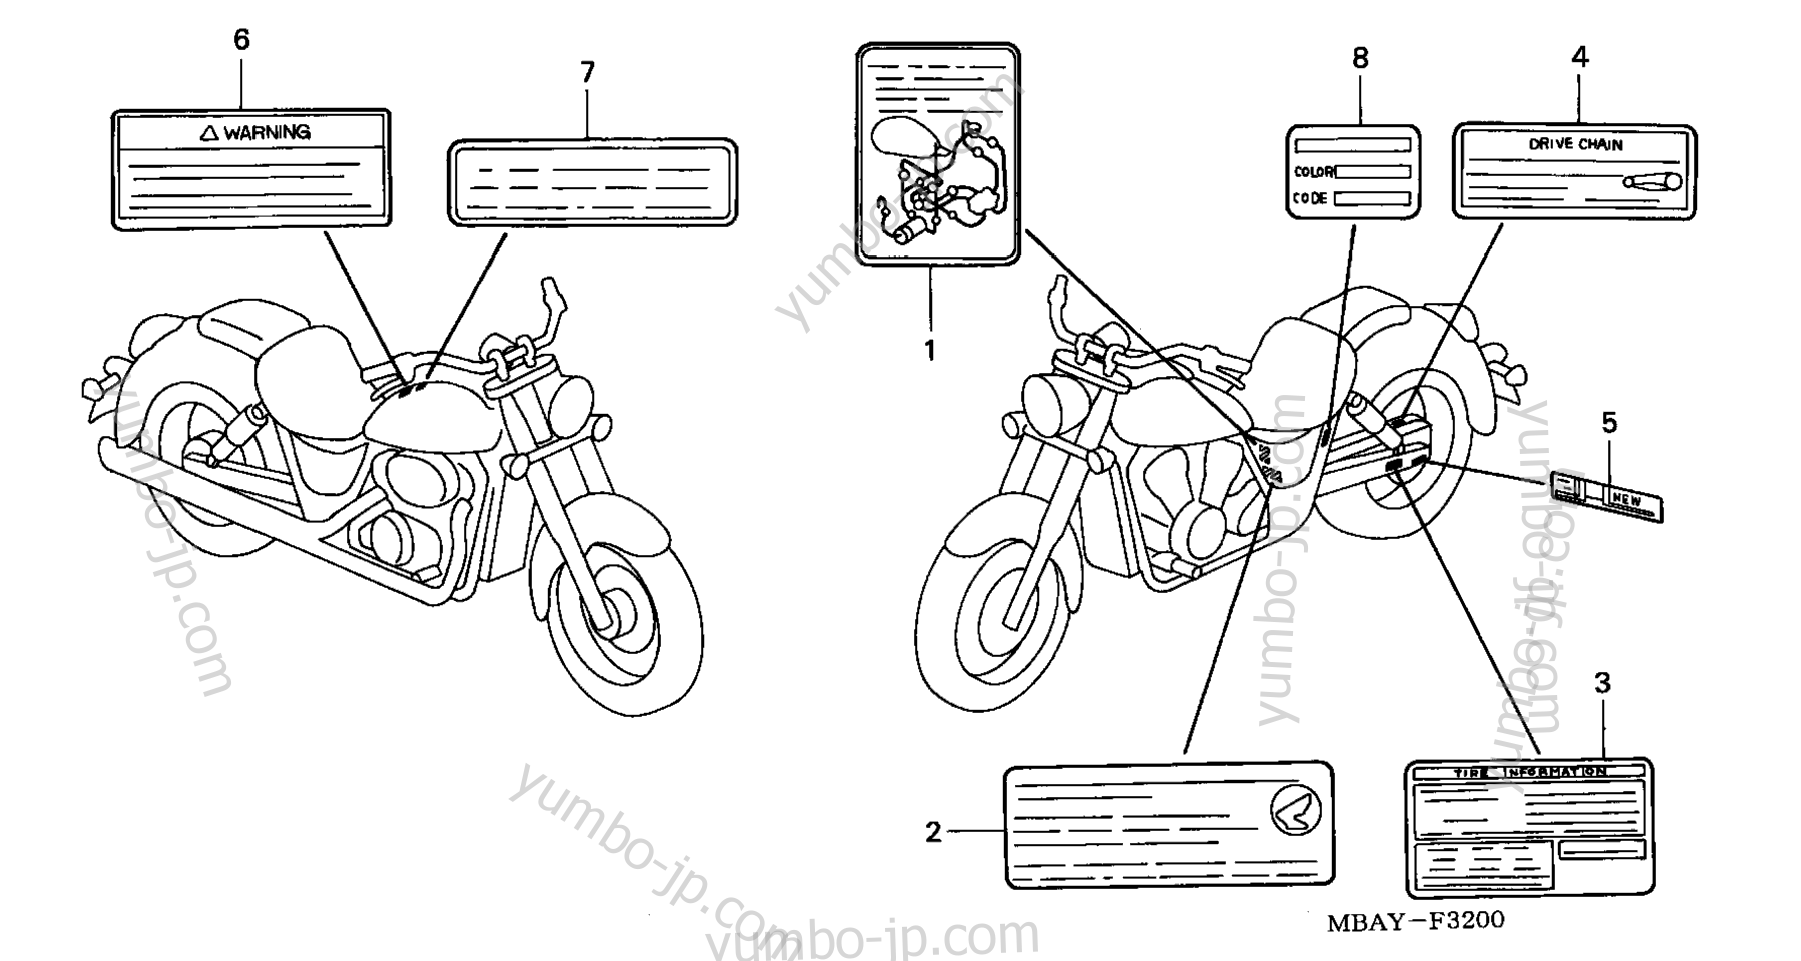 CAUTION LABELS для мотоциклов HONDA VT750CDC AC 2003 г.